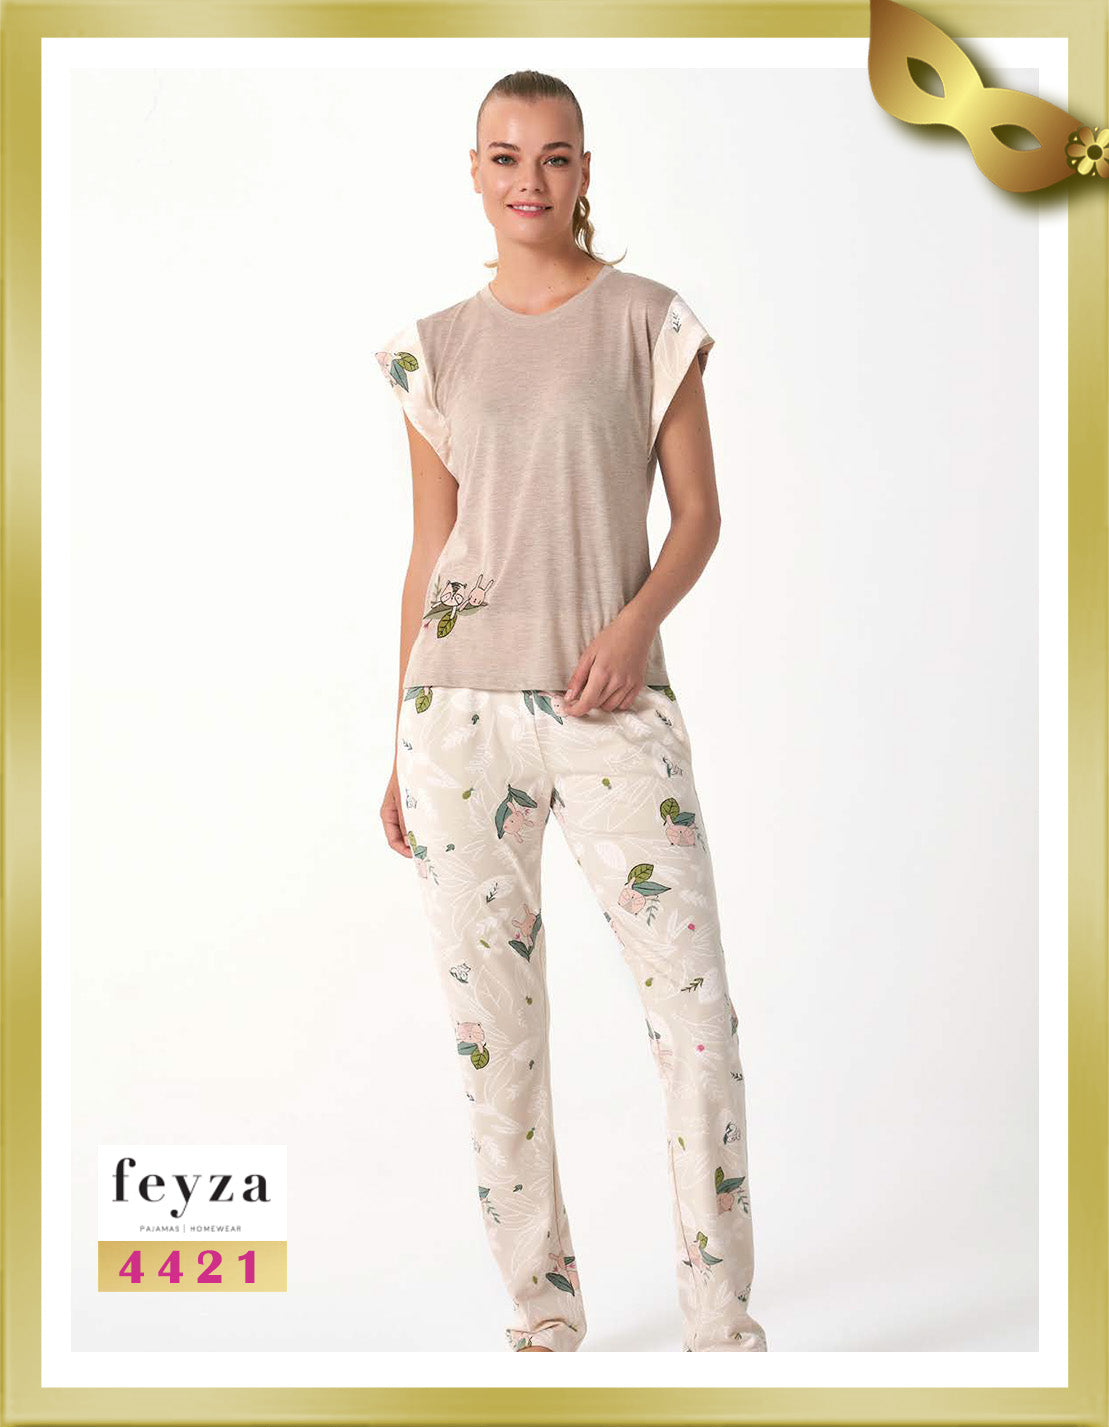 Feyza Short Sleeves Long Printed Pajamas 4421 Pearl Bush